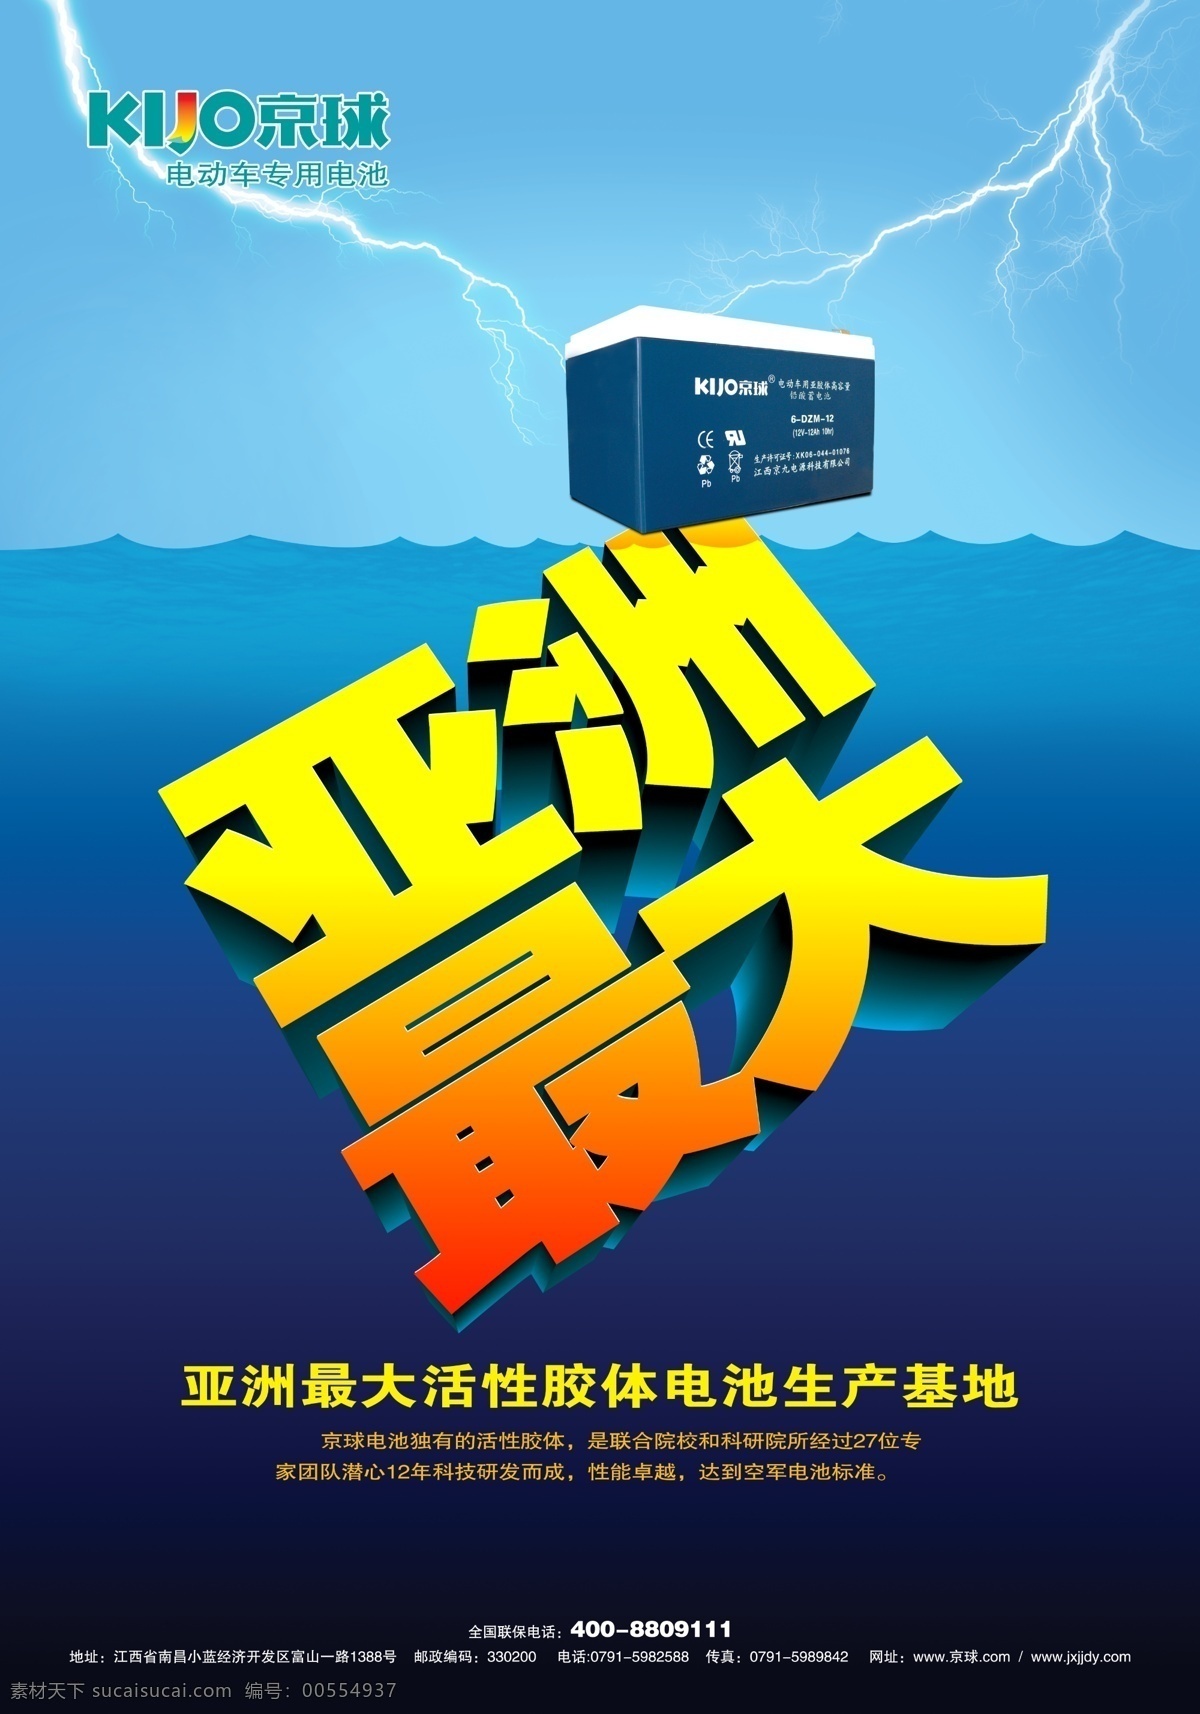 京球电池 京球 电池 电动车 亚洲最大 活性 胶体 生产基地 广告设计模板 源文件